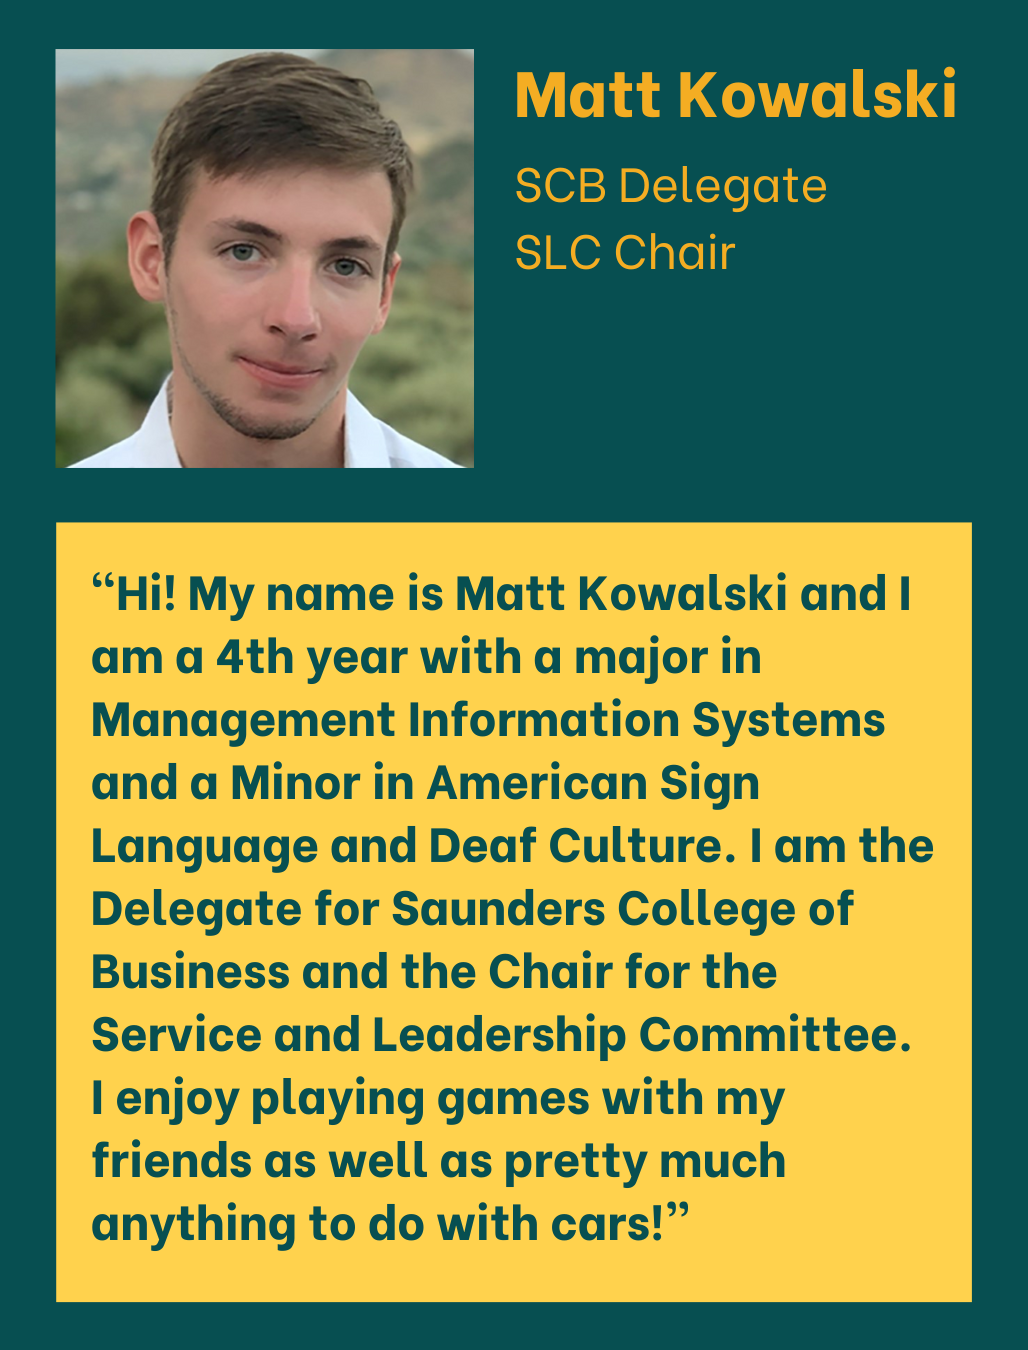 Matt Kowalski SCB Delegate SLC Chair